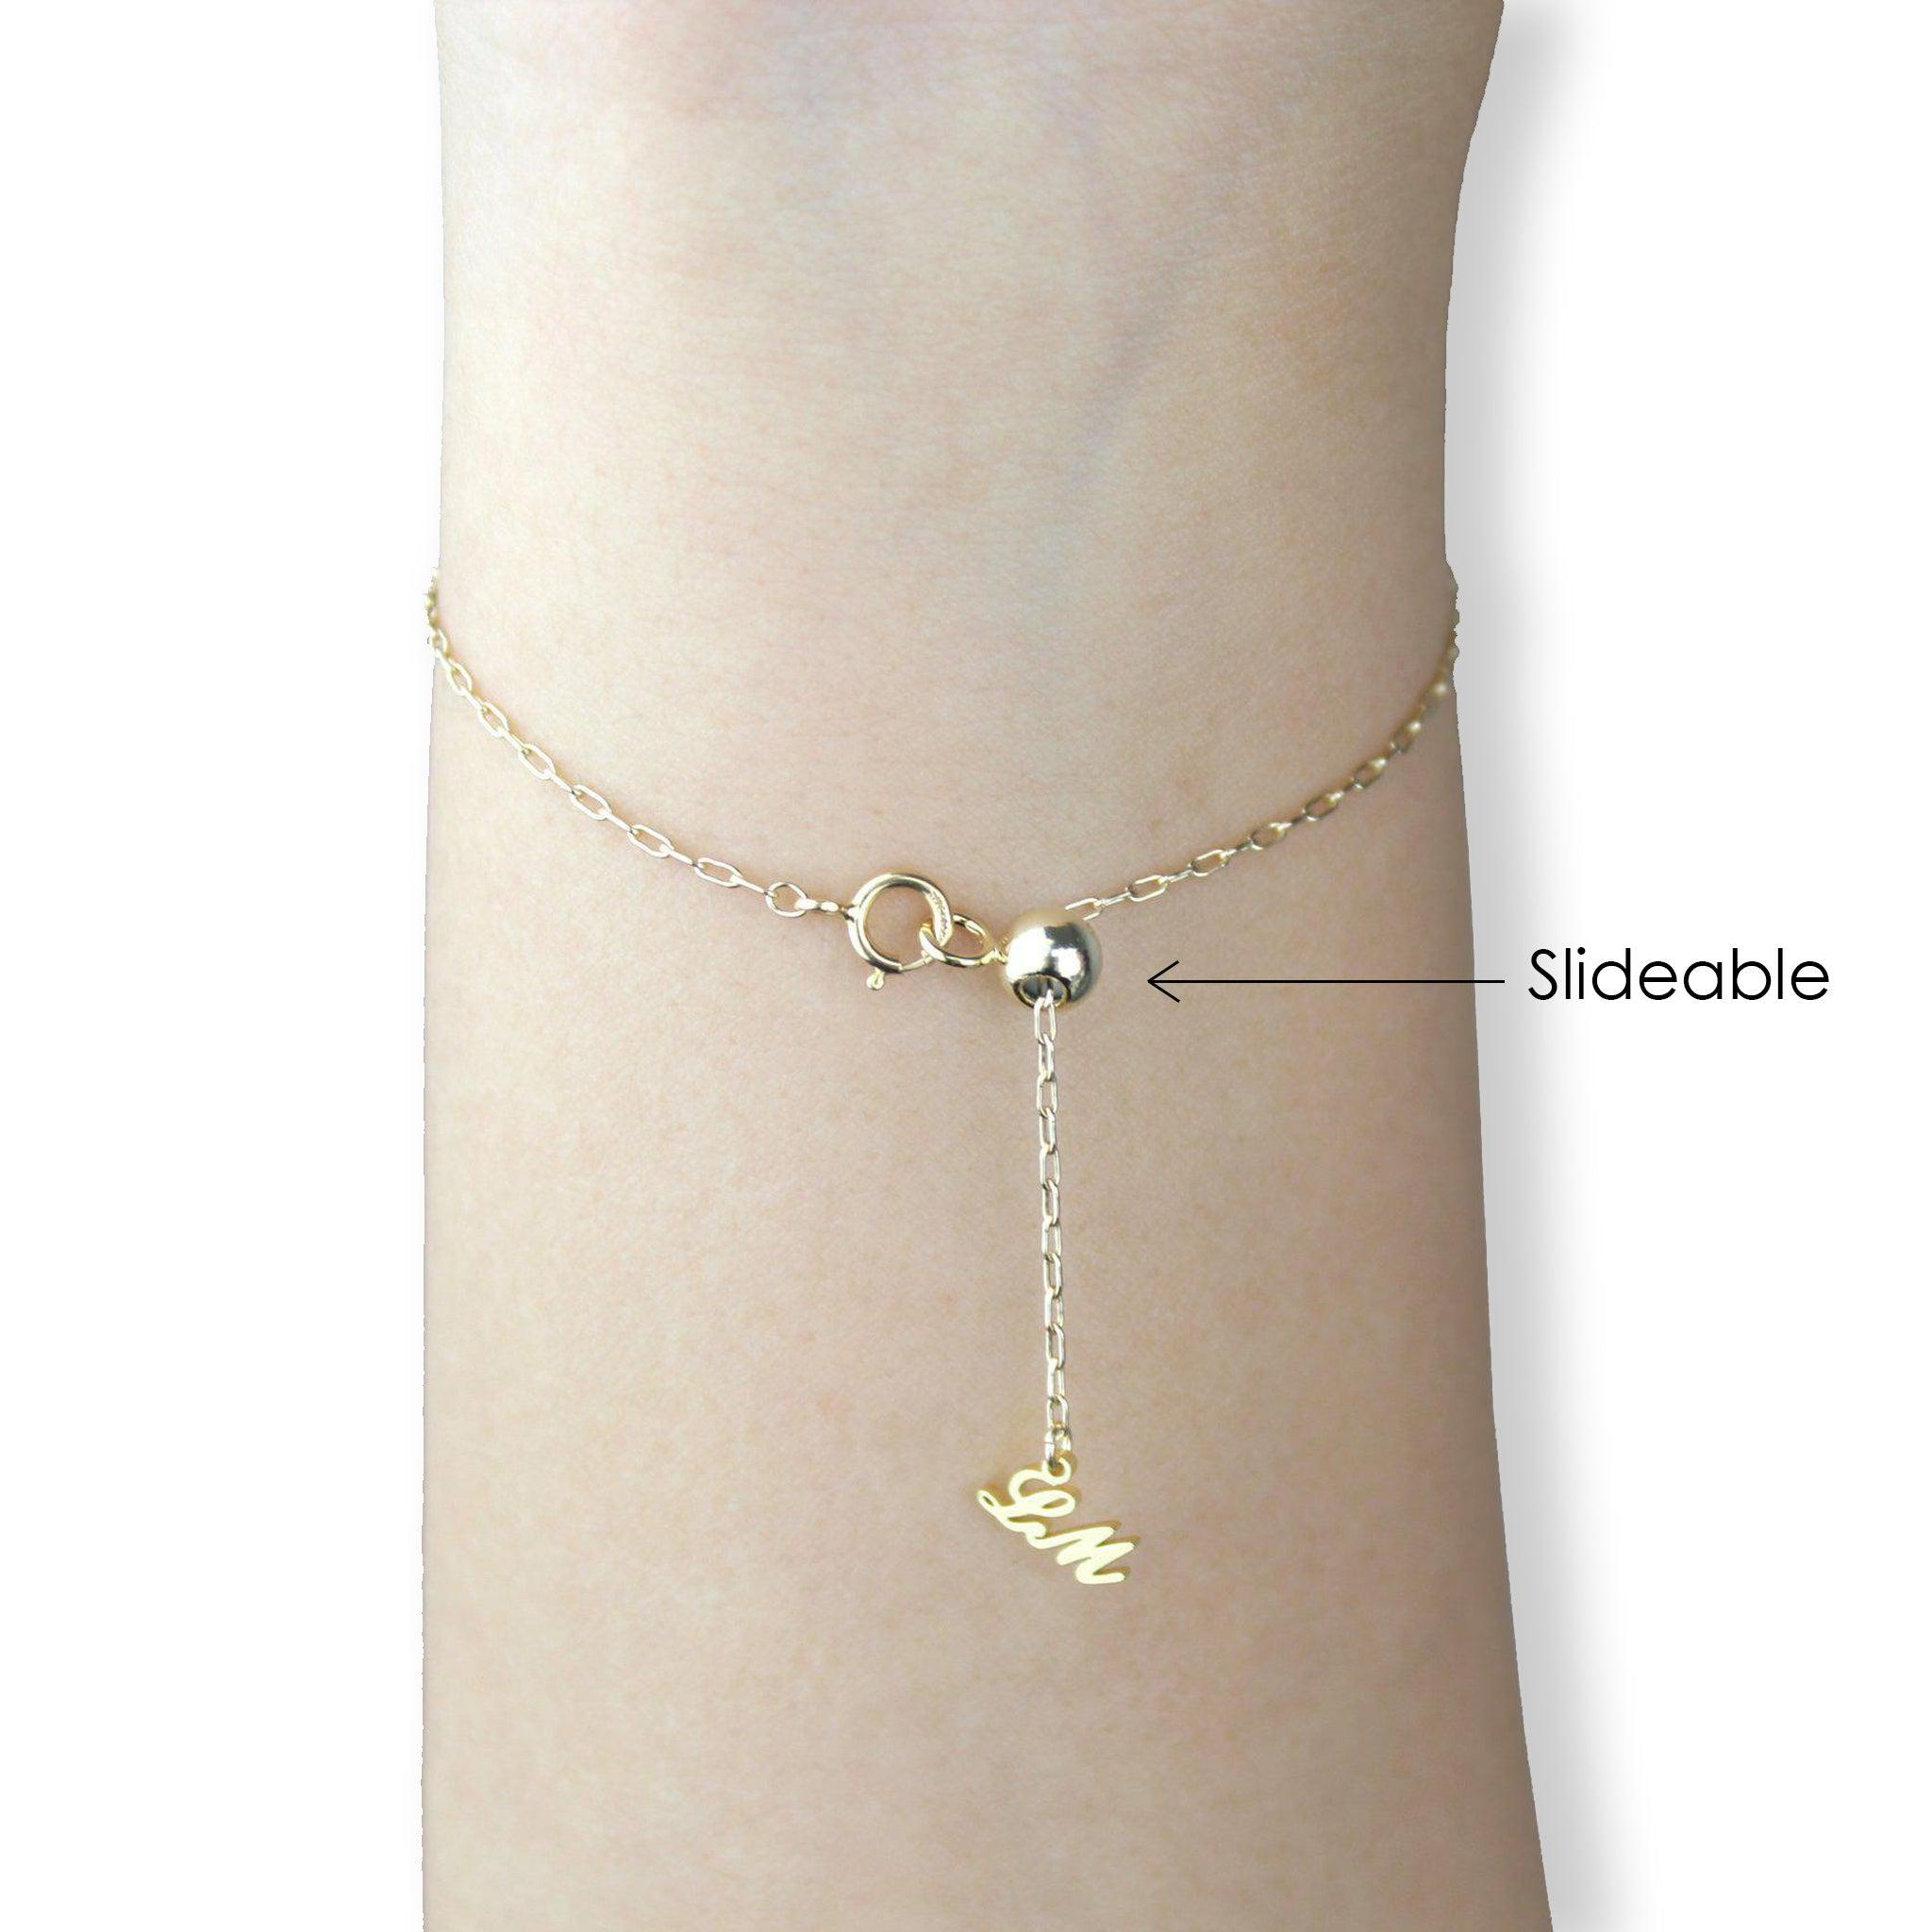 [Constellation] Gemini Necklace